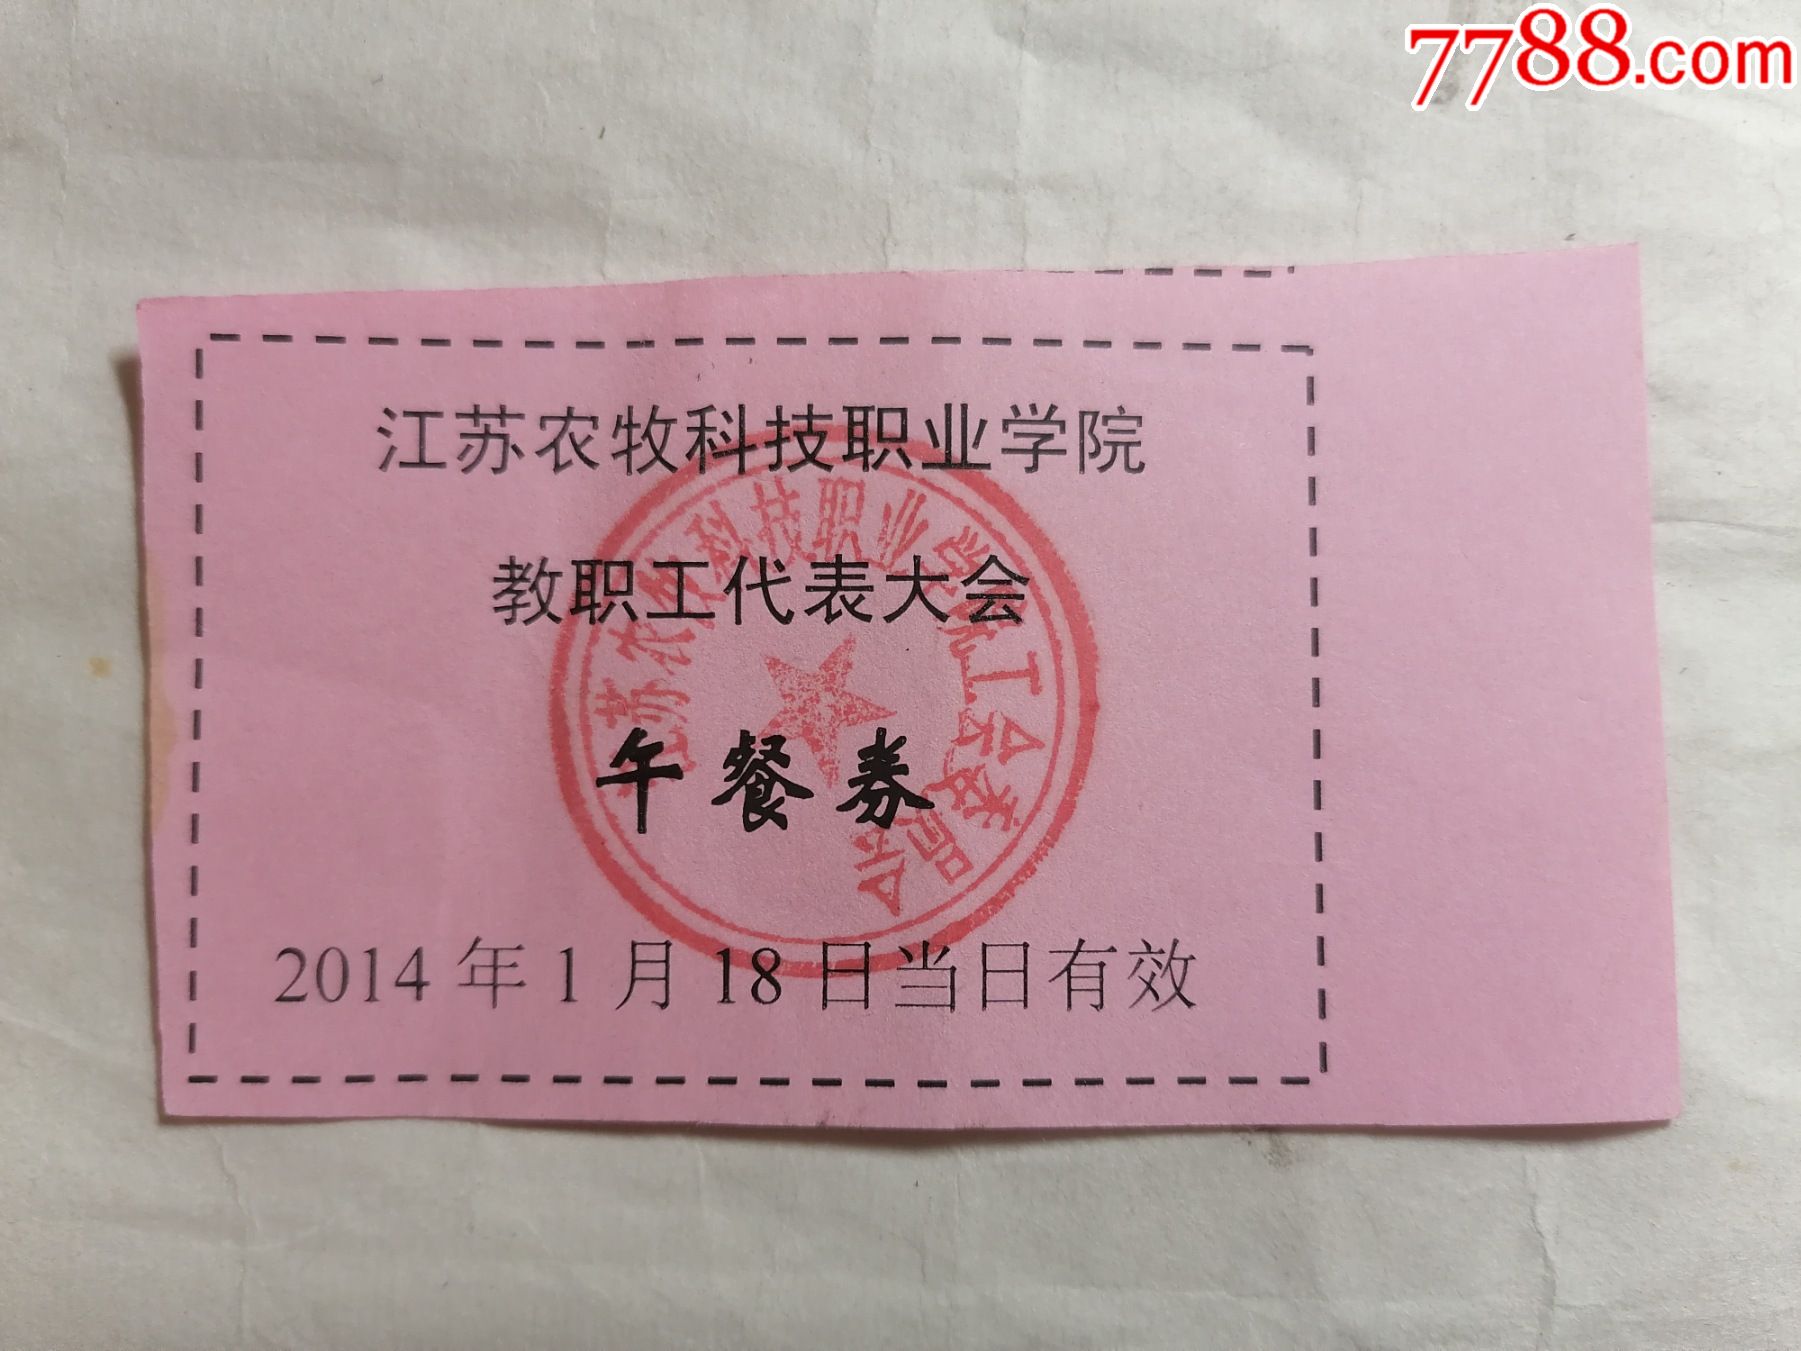 江苏农牧科技职业学院教职工代表大会午餐券